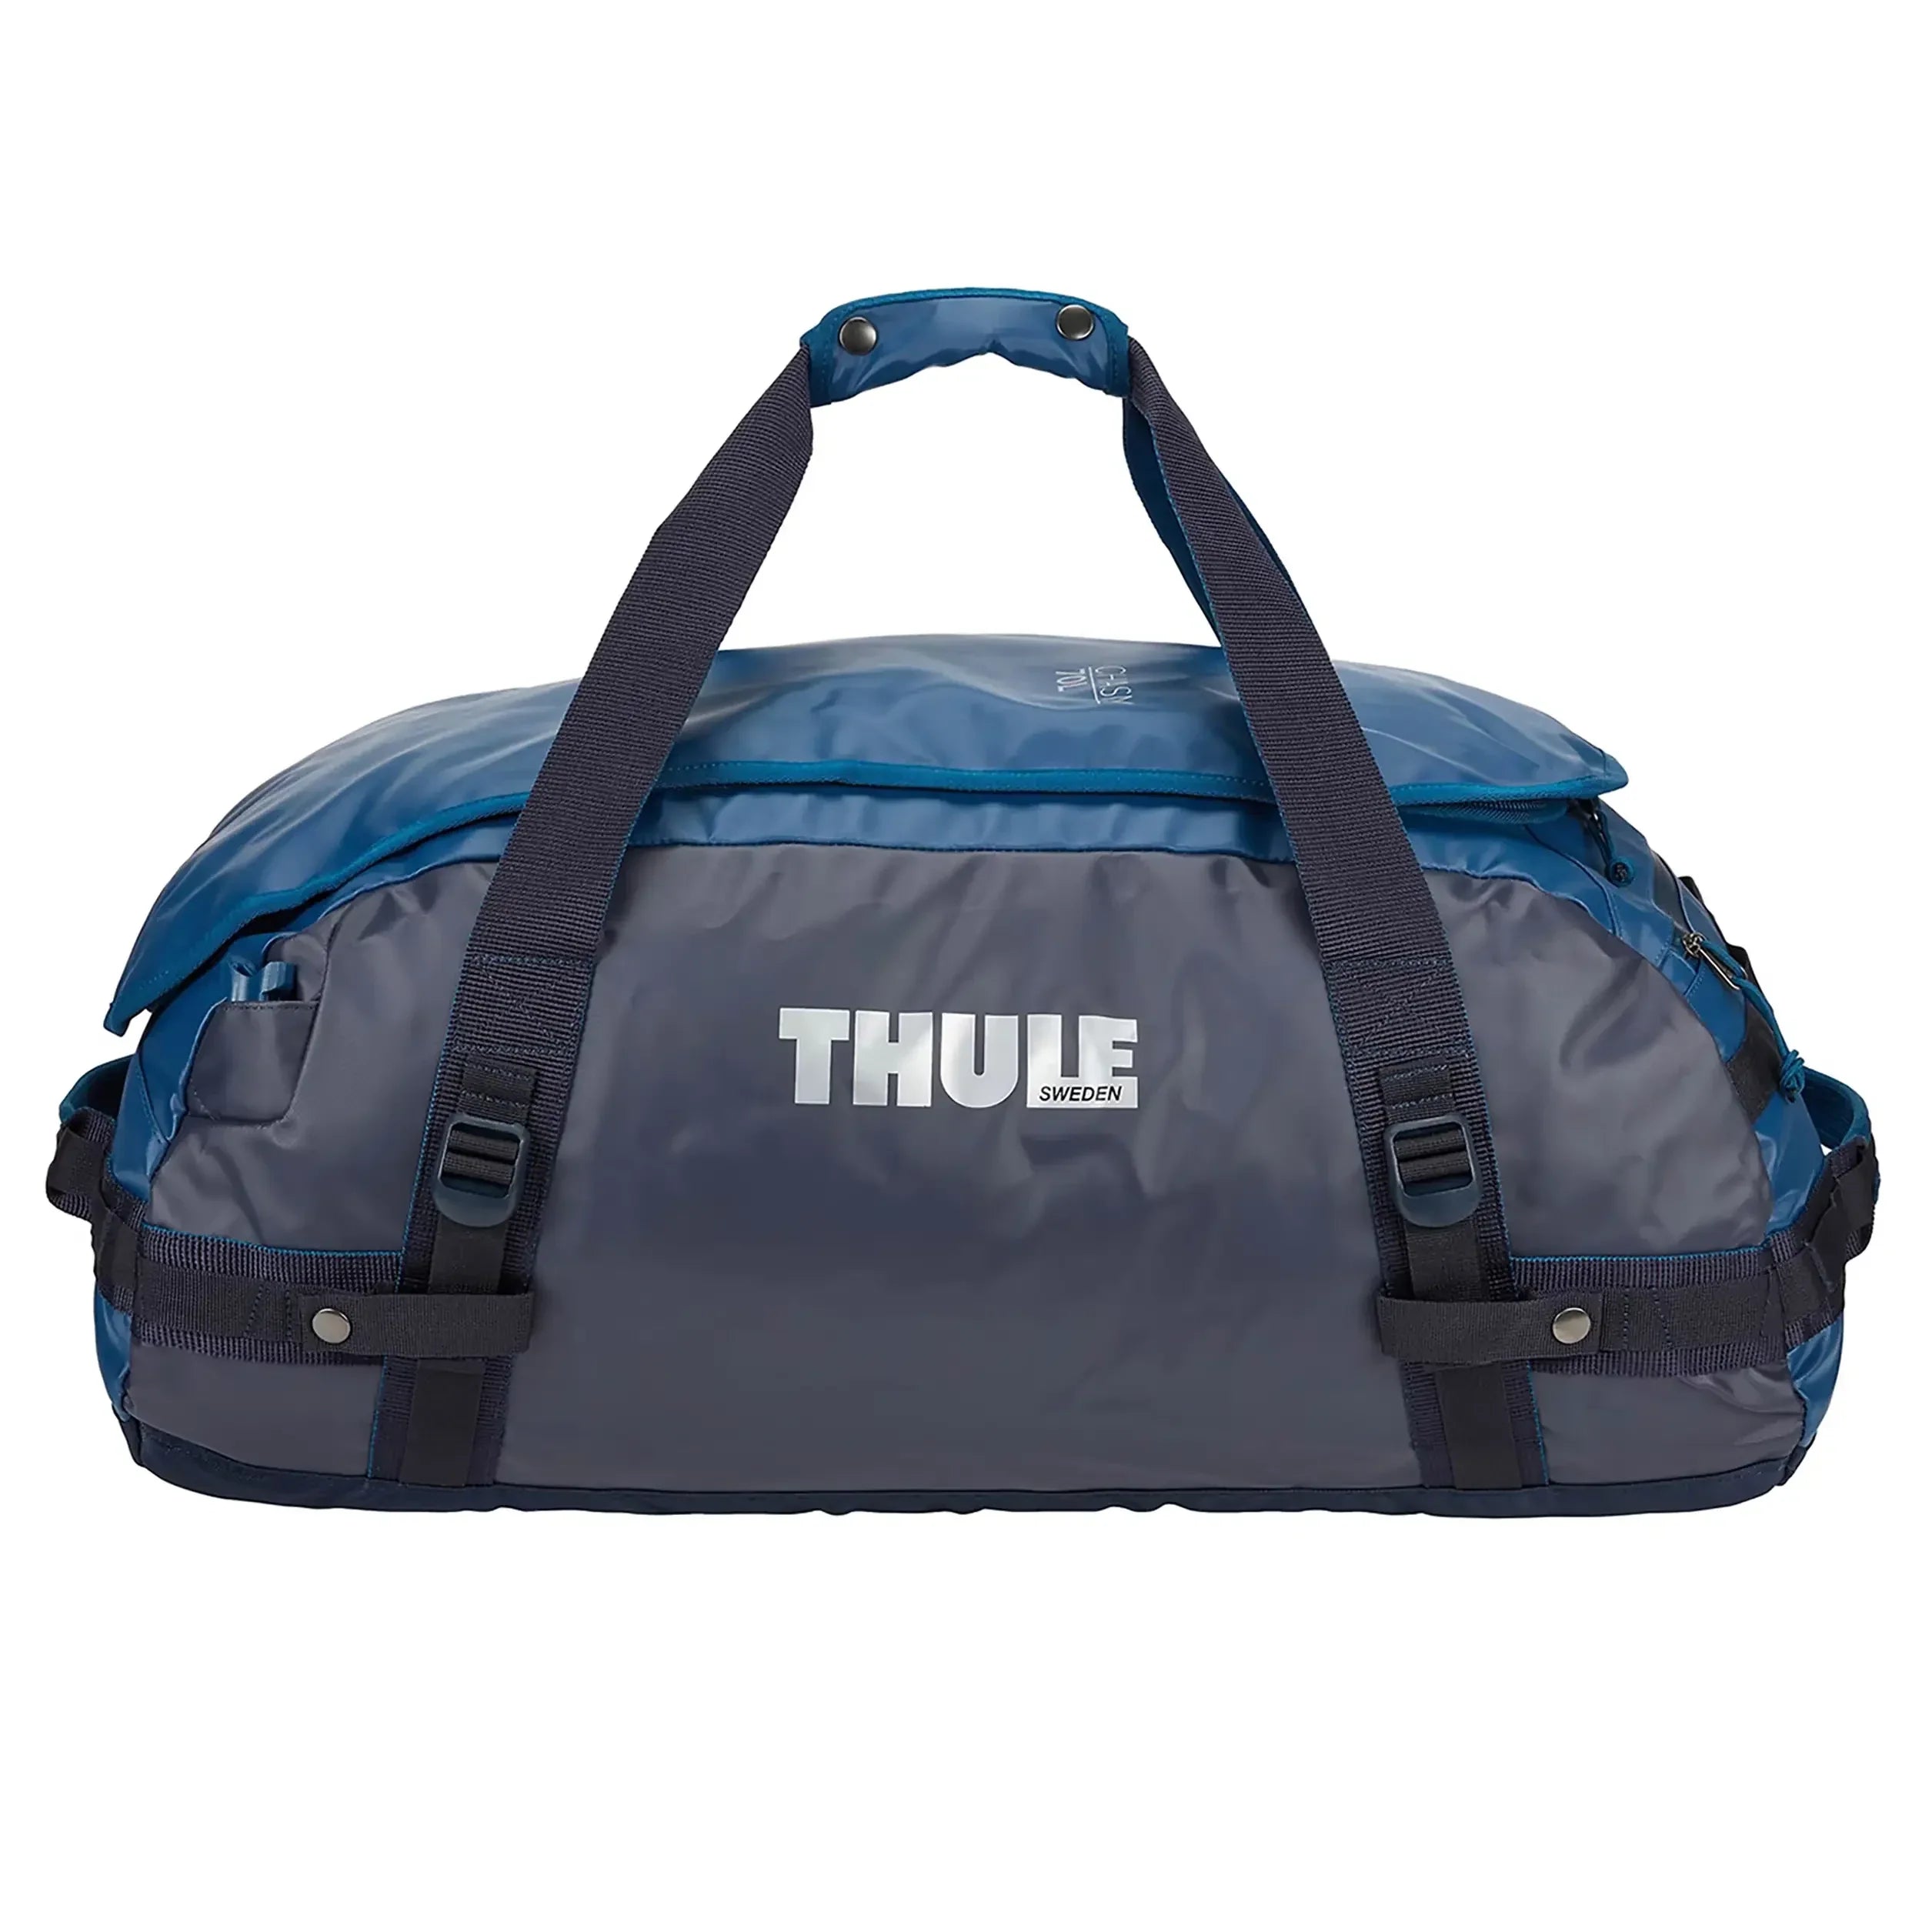 Thule Travel Chasm Travel Bag 74 cm - Olivine